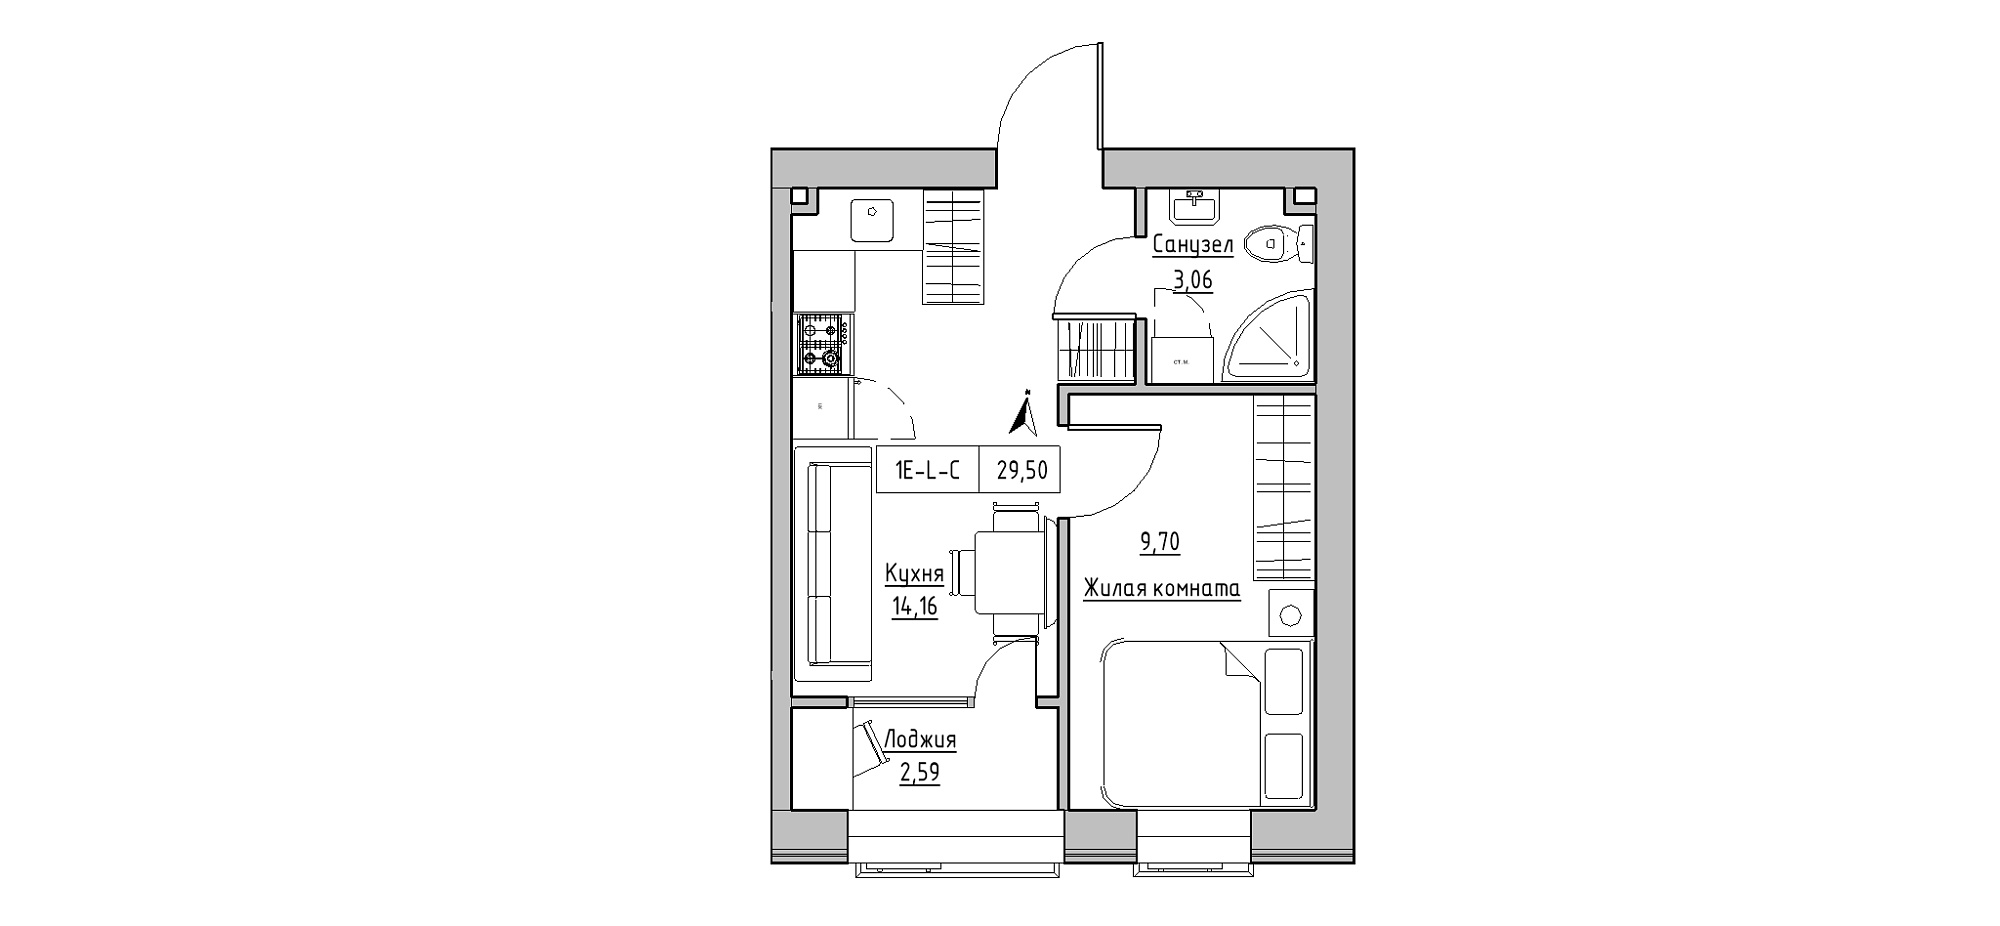 Планировка 1-к квартира площей 29.5м2, KS-020-04/0006.